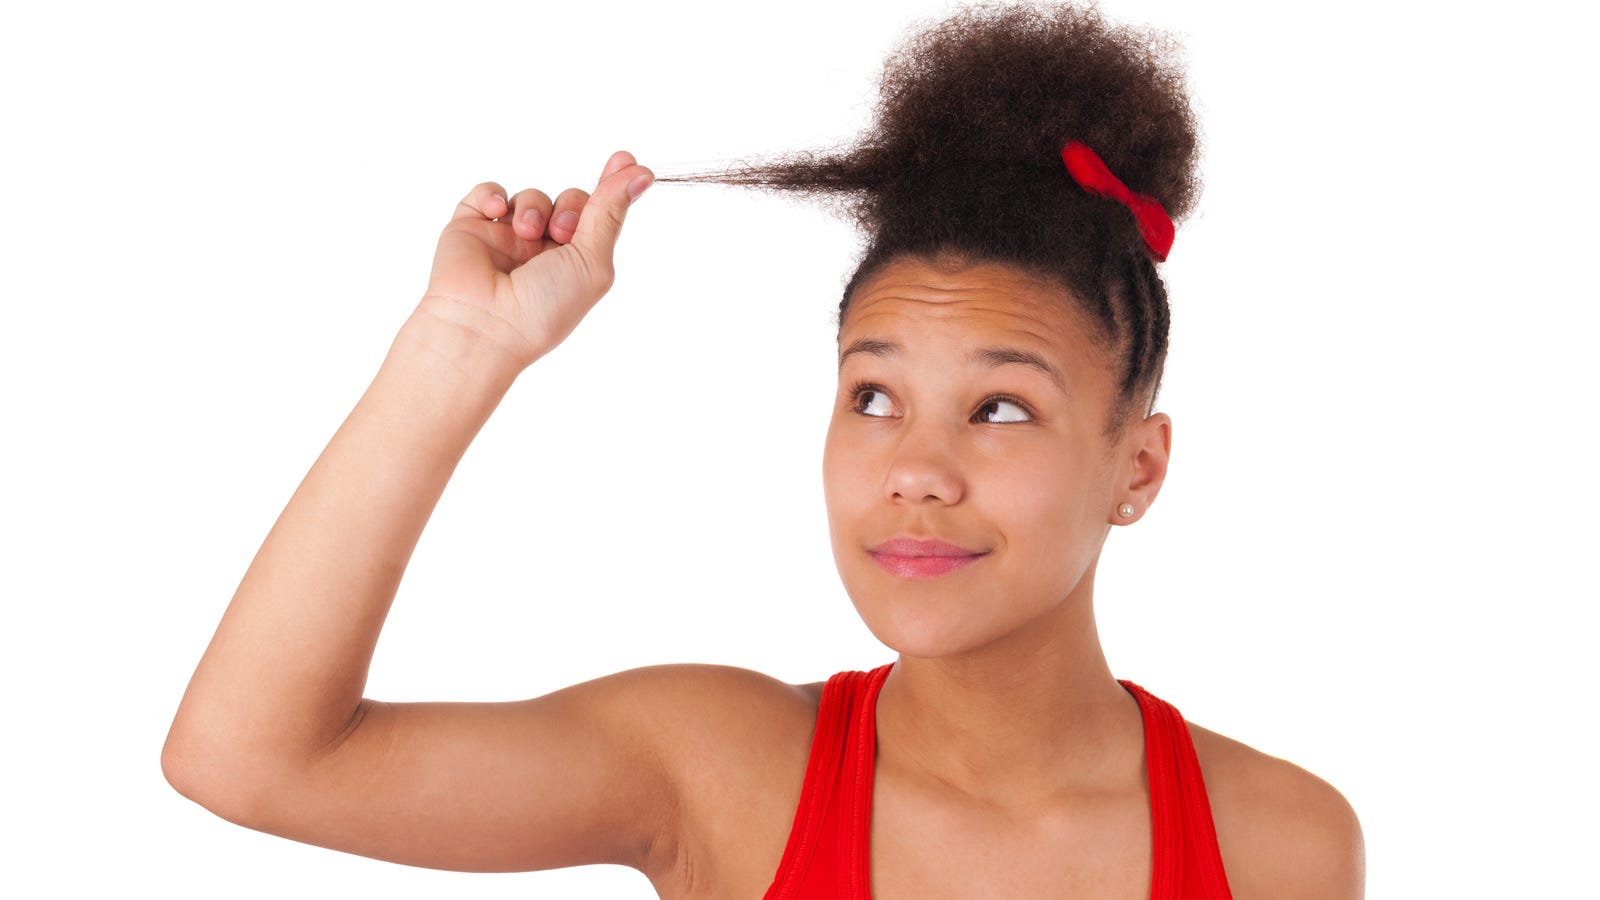 Salon Tells Black Women To Straighten Up Hair